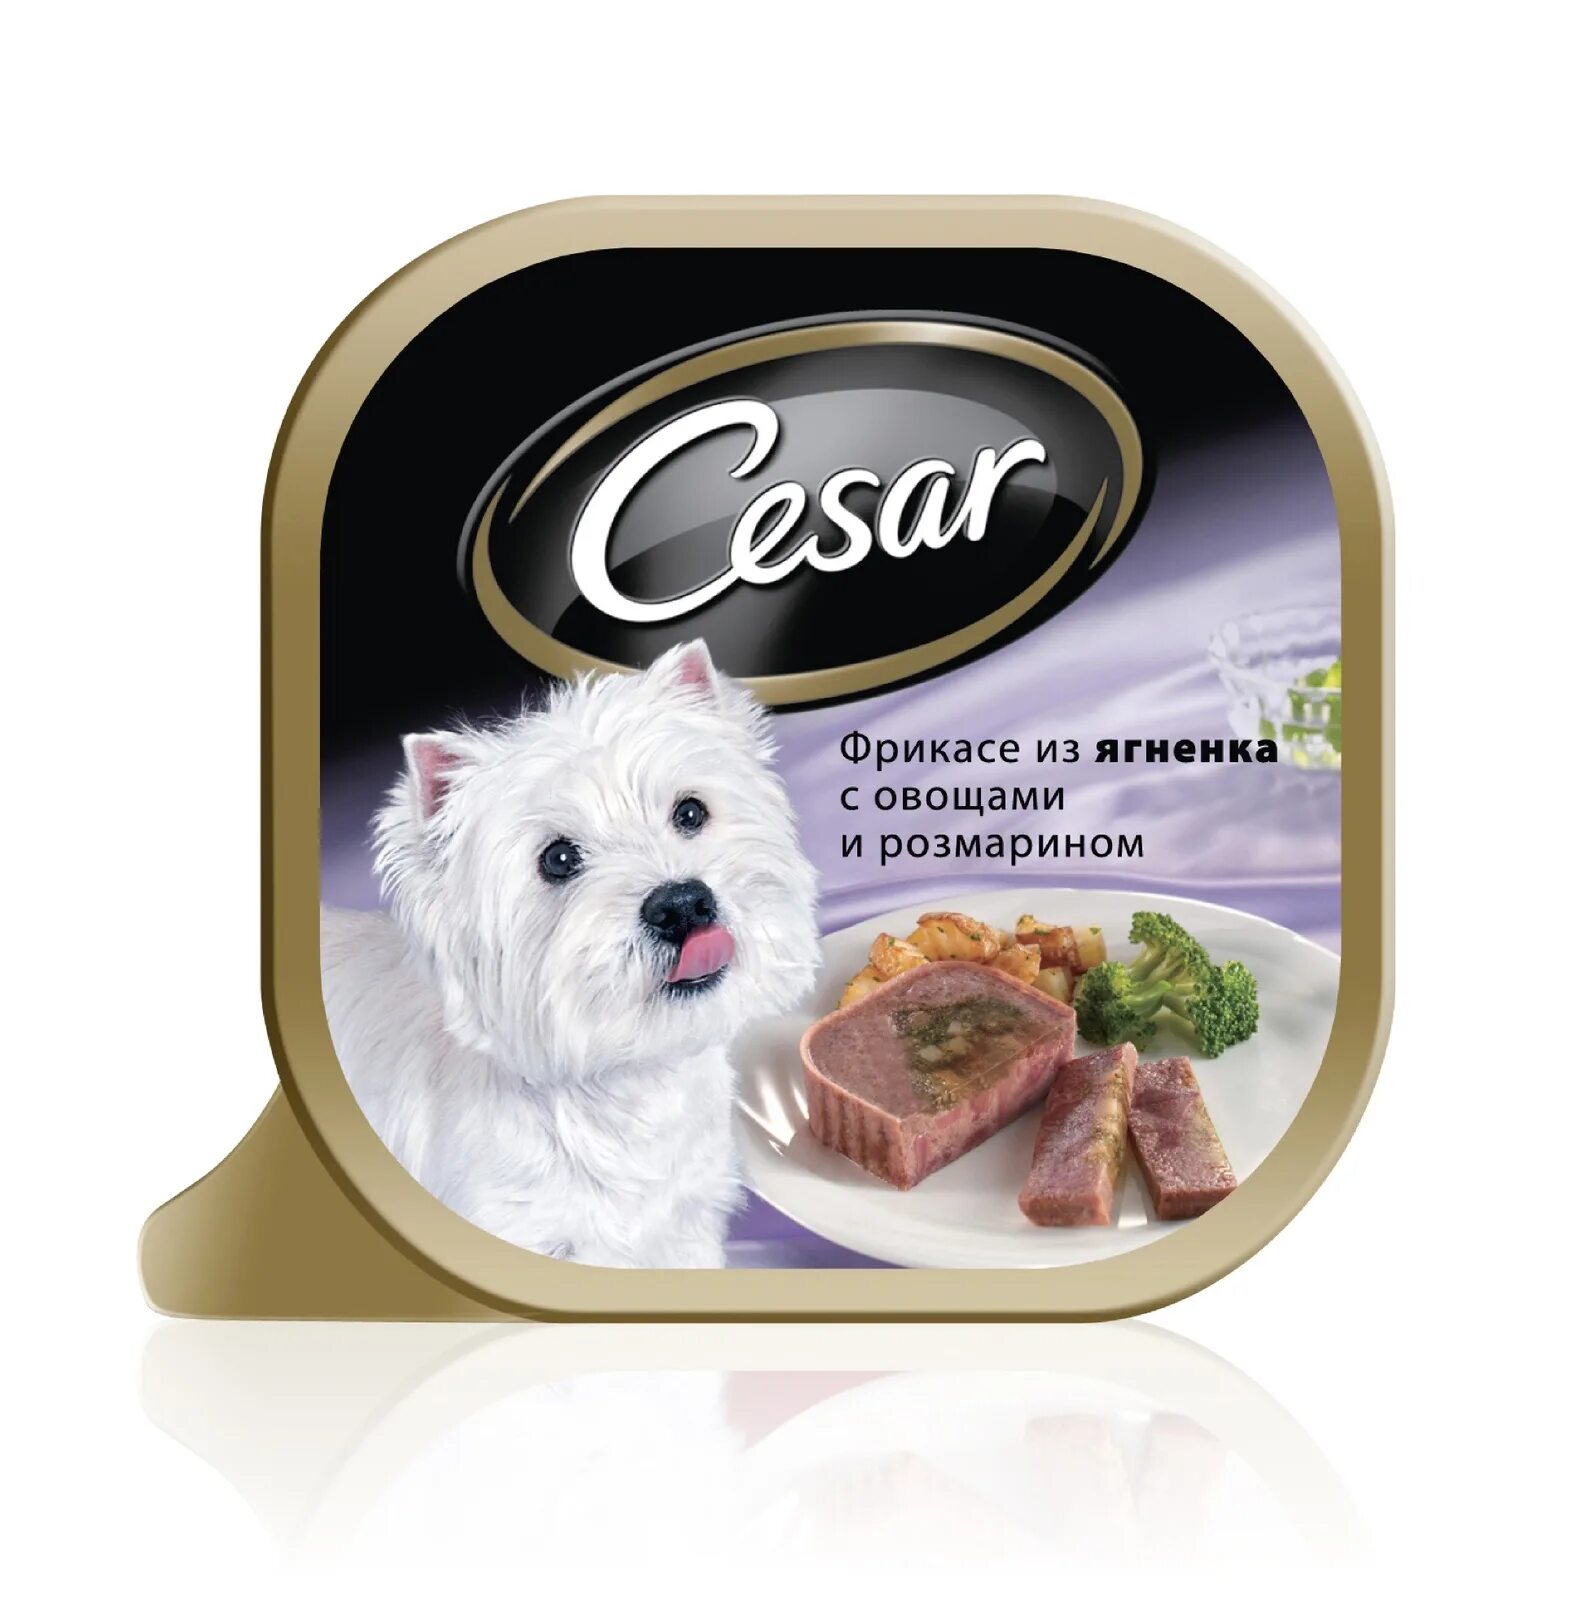 Корм для собаки доставка москва. Влажный корм для собак Cesar из говядины с овощами 100г. Cesar консервы для собак. Влажный корм для собак Cesar.